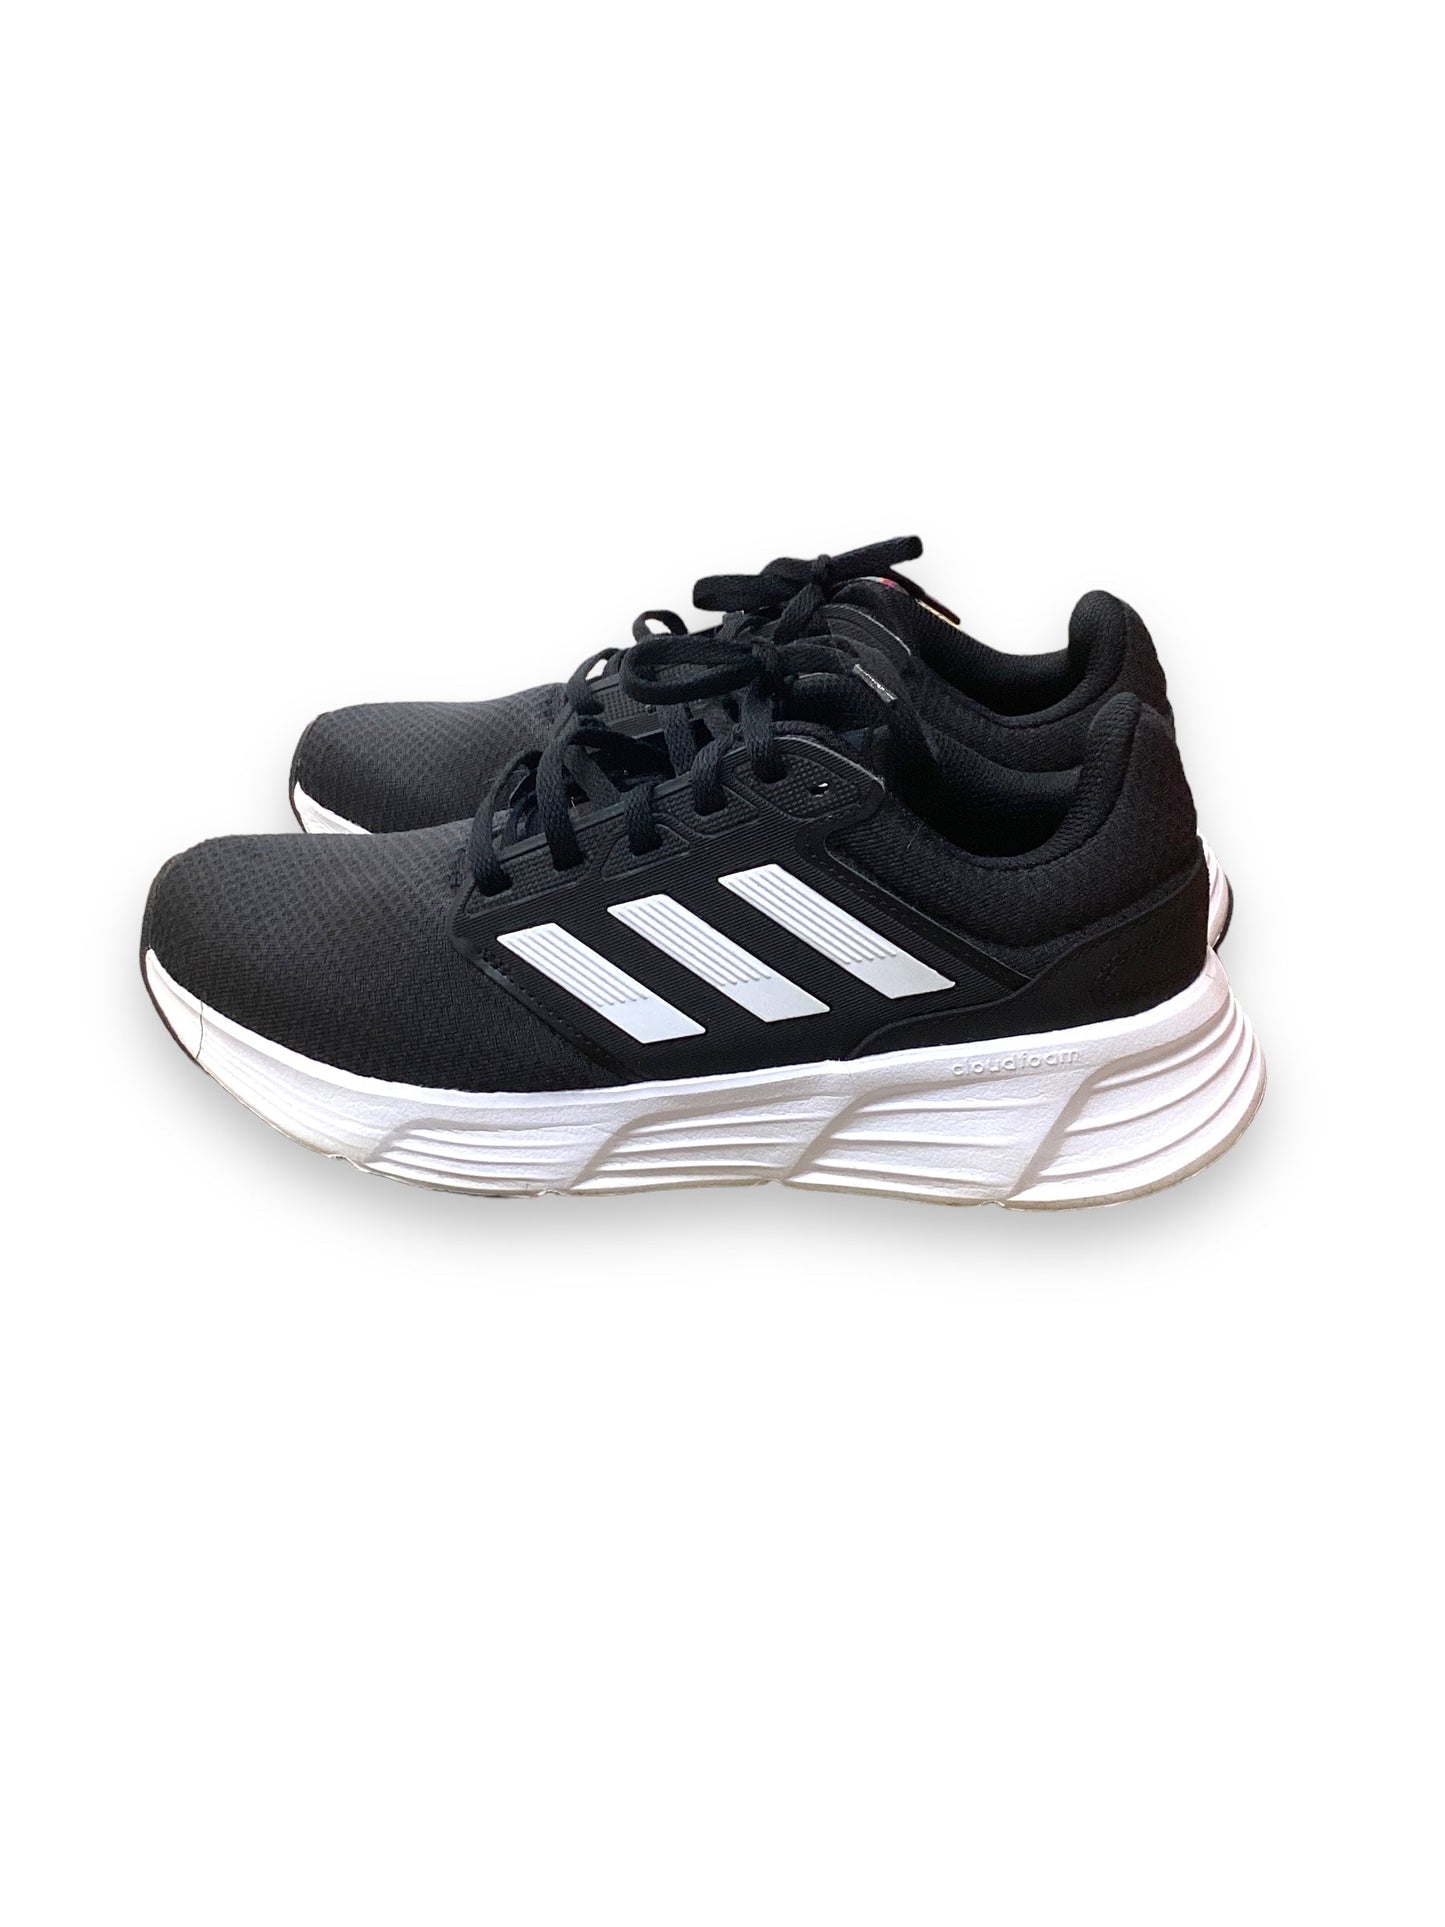 Black Shoes Athletic Adidas, Size 7